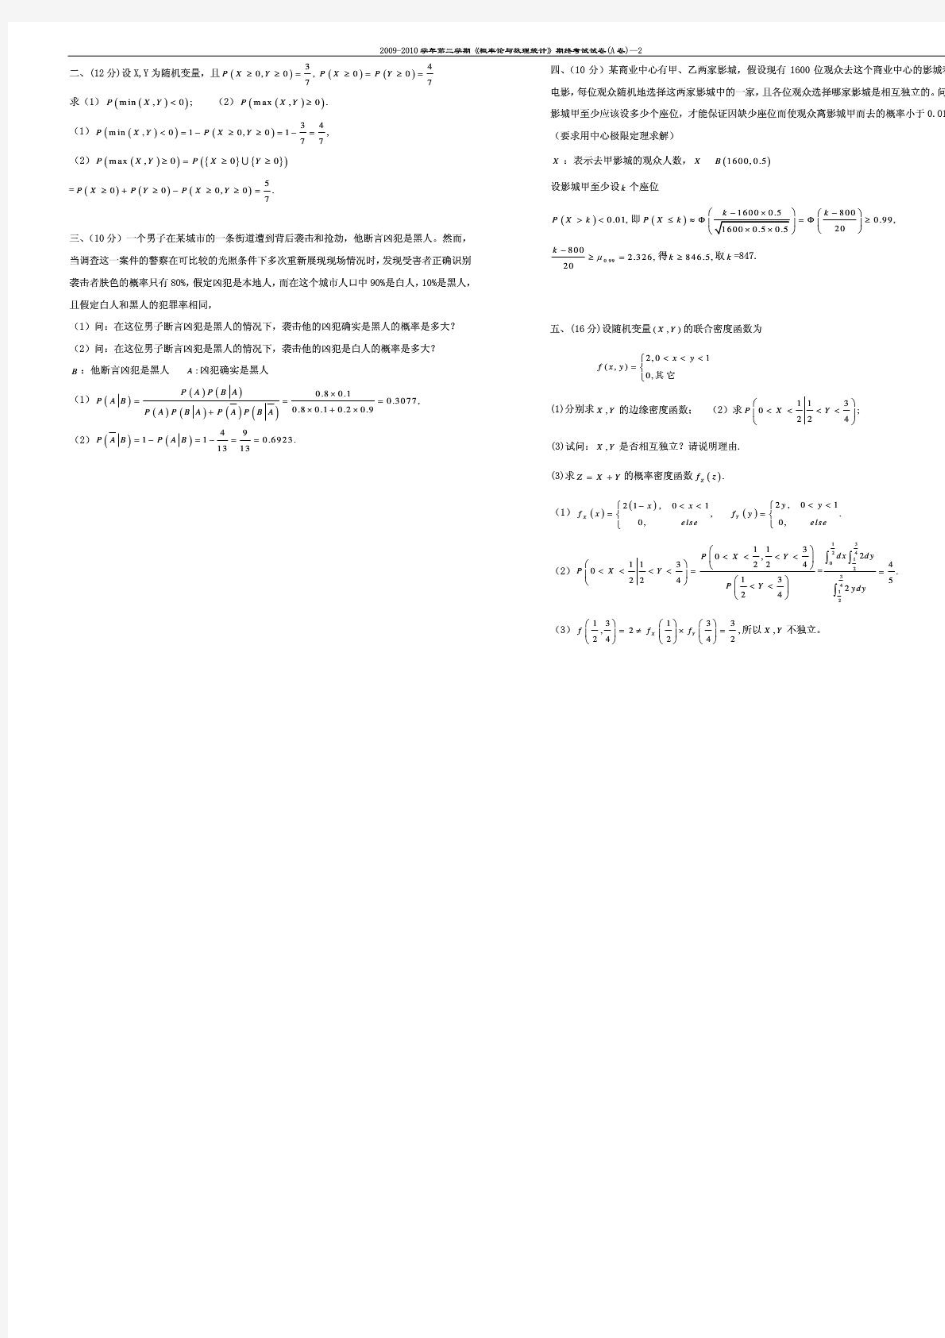 同济大学概率论与数理统计期末试卷(带答案)09-10 A 答案